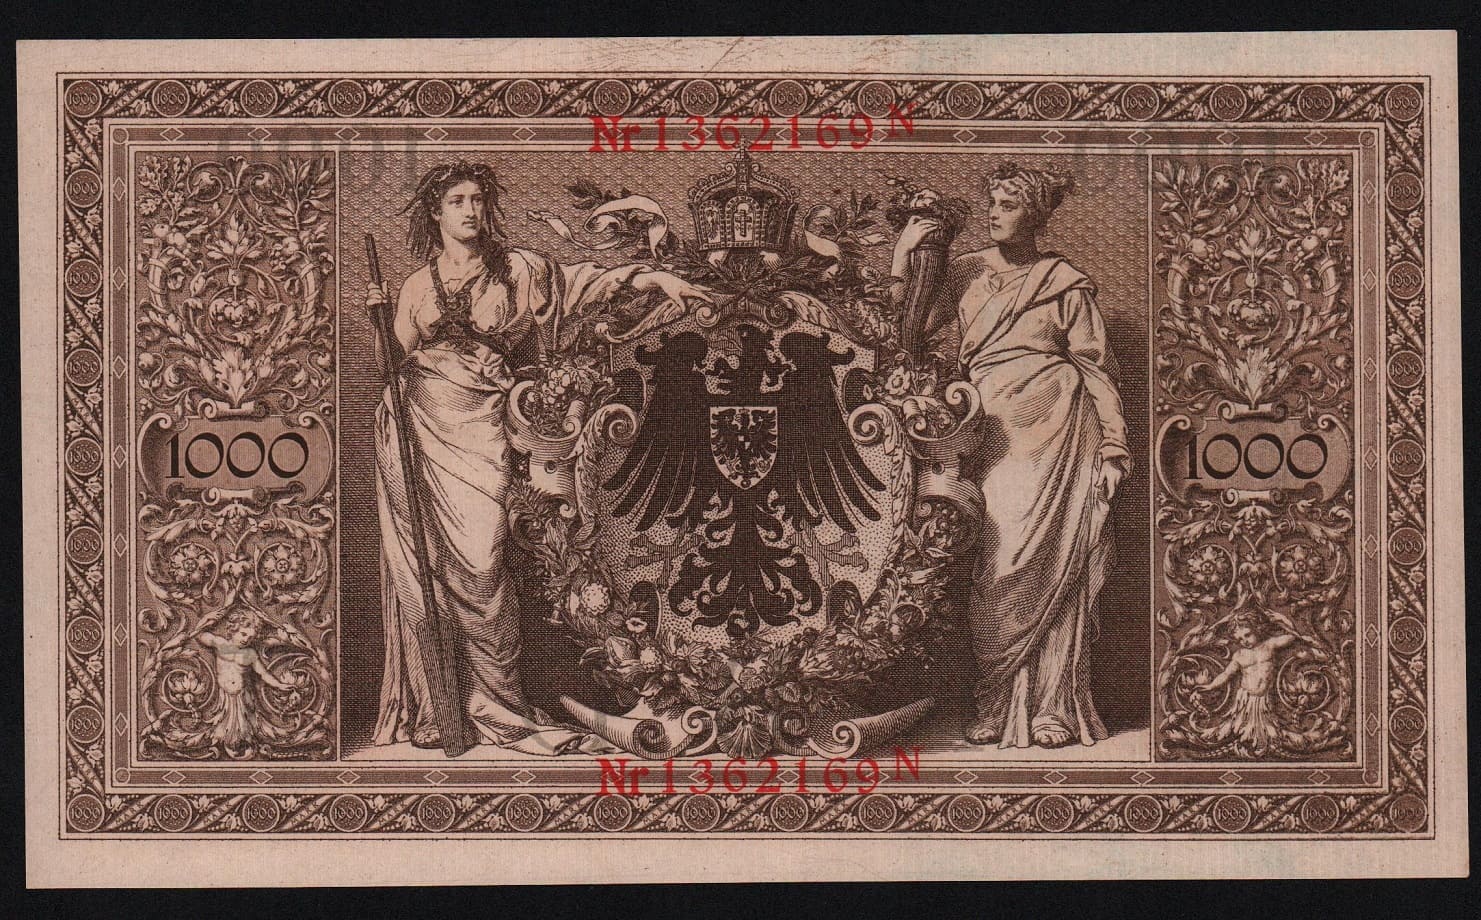 Купить Германия 1000 марок 1910 год красная печать, UNC! Из пачки, номера будут отличаться!